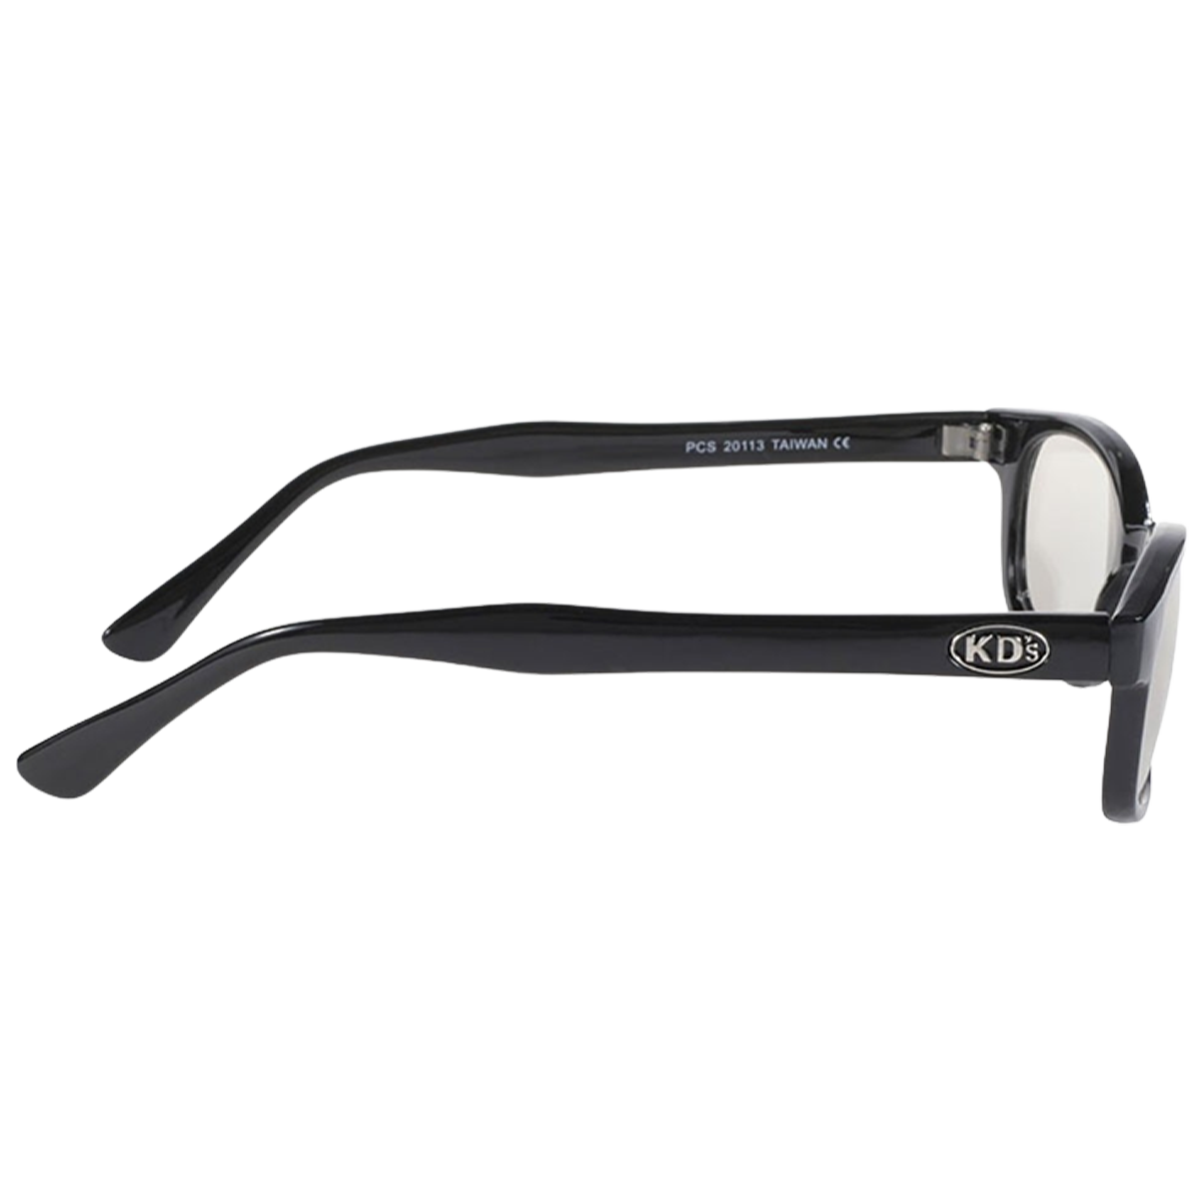 Sunglasses KD's 20113 classic - silver mirrored lenses